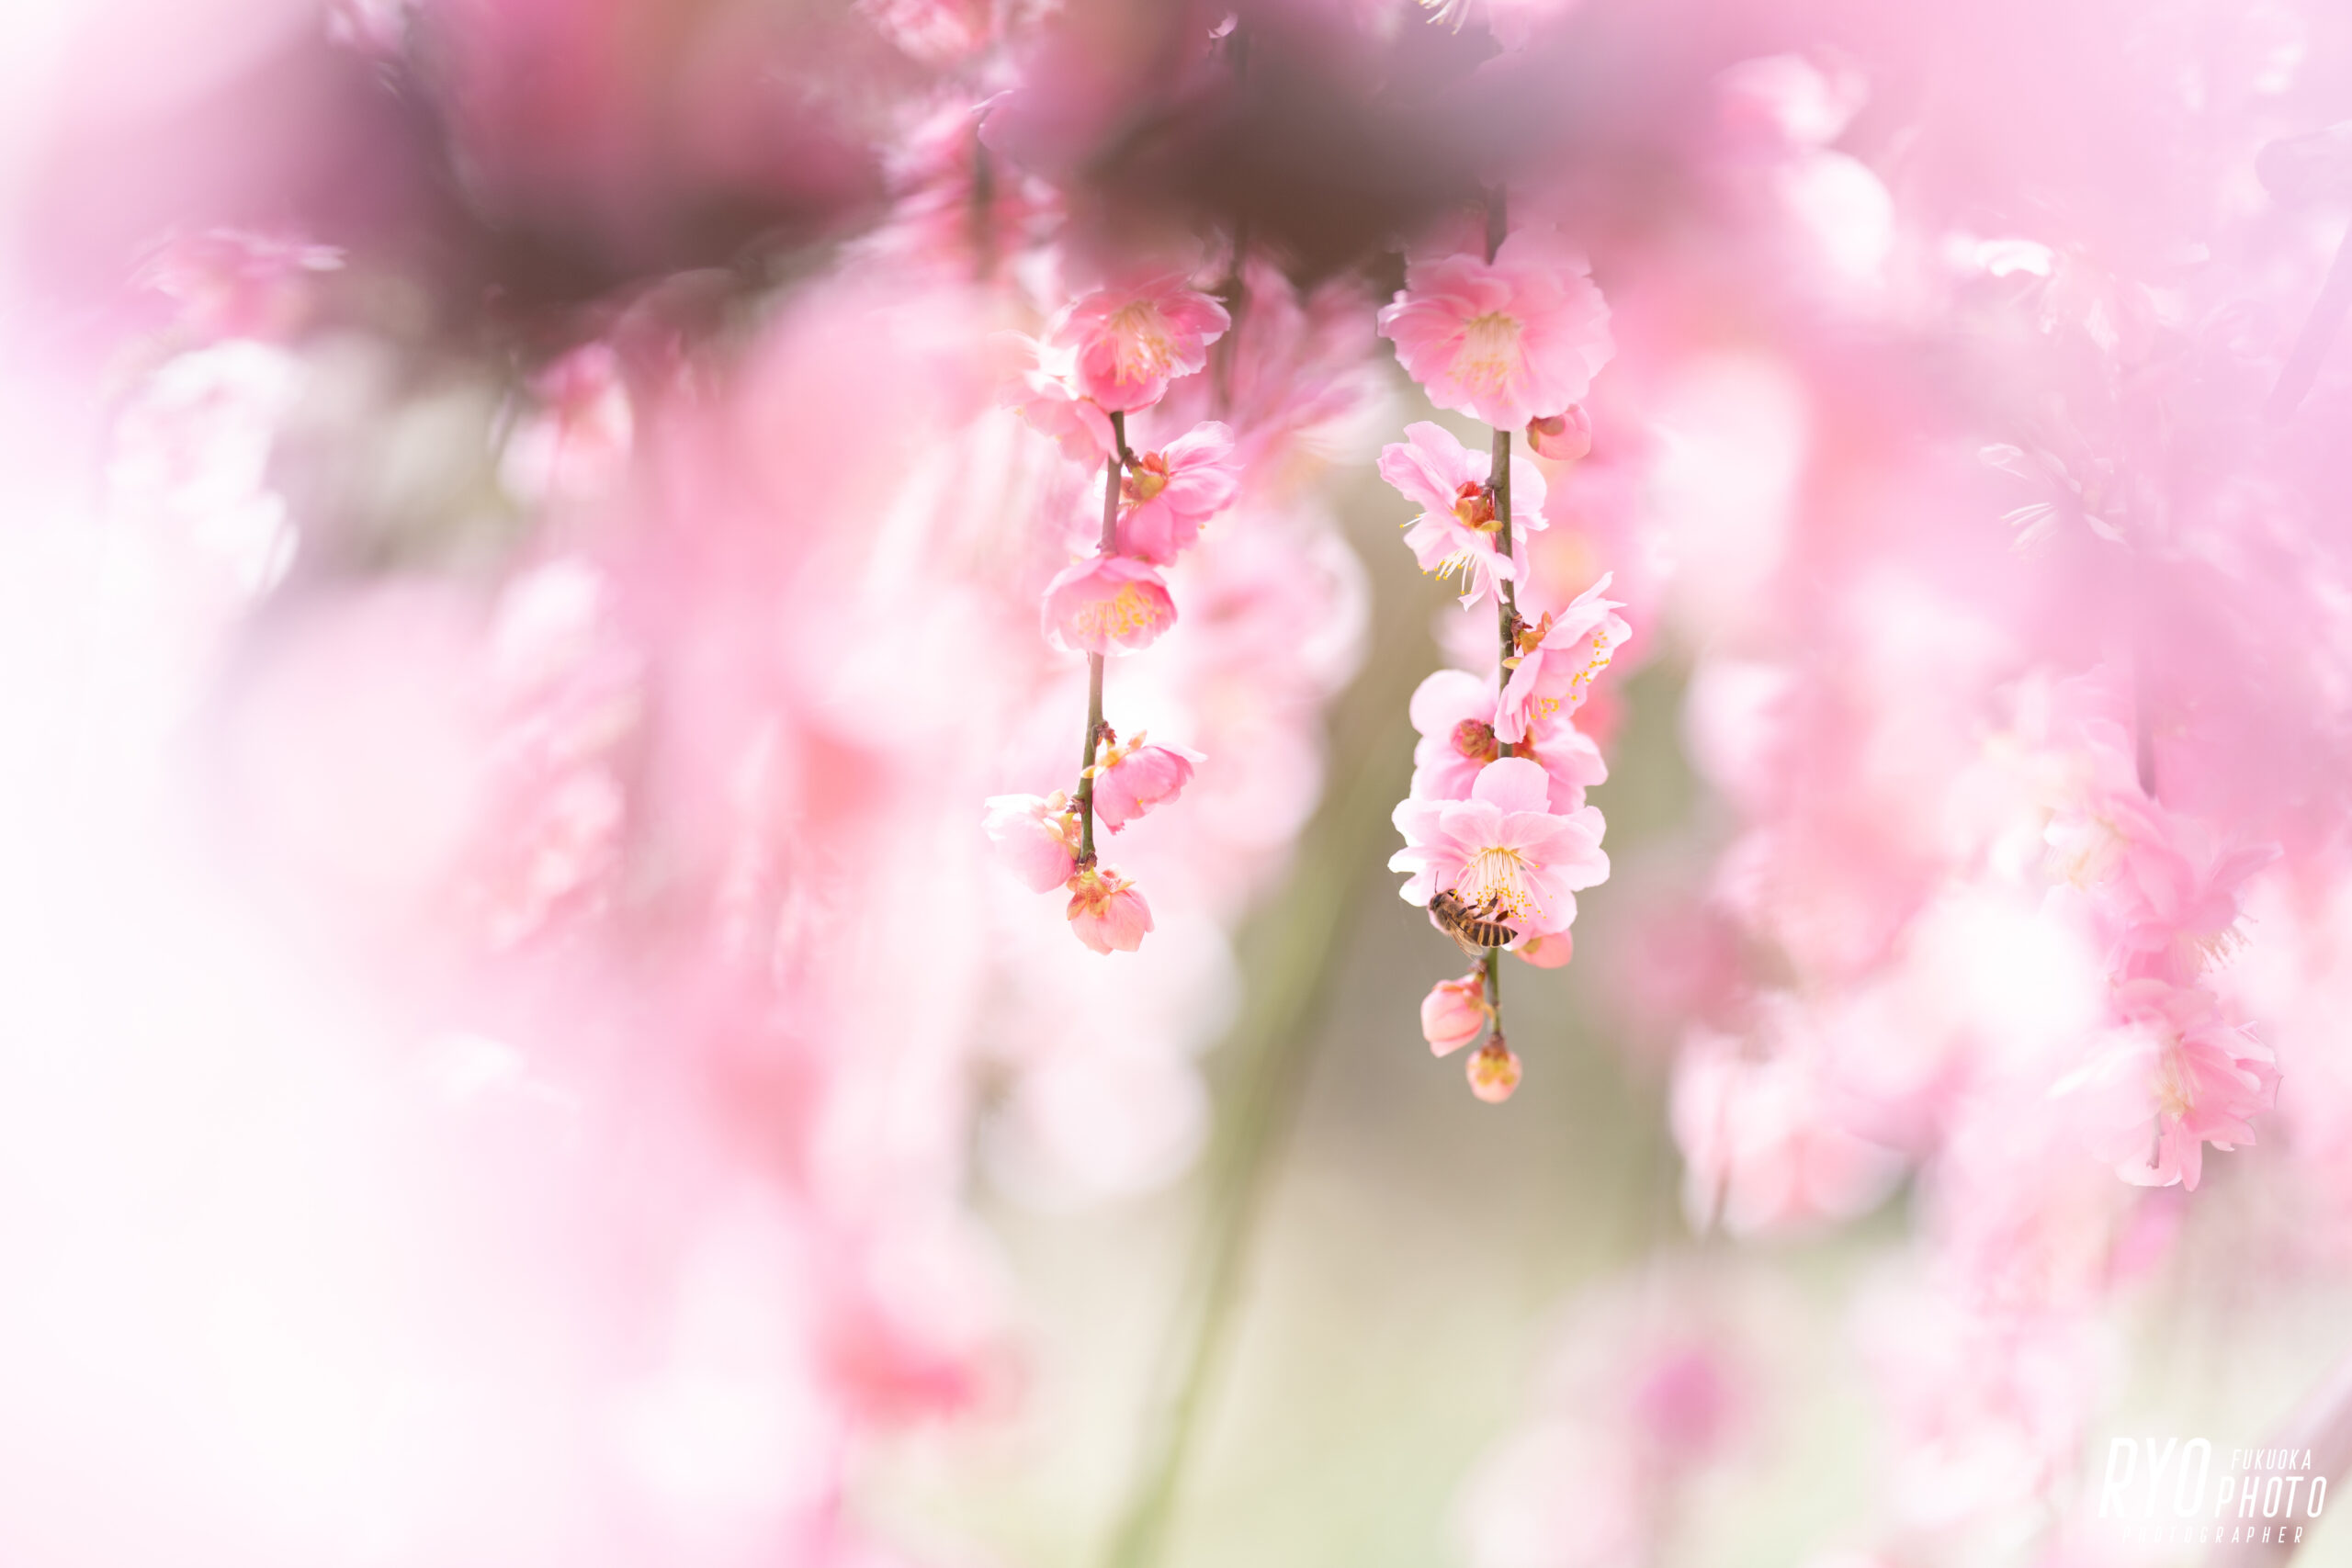 大牟田氏普光寺で撮影した梅の写真